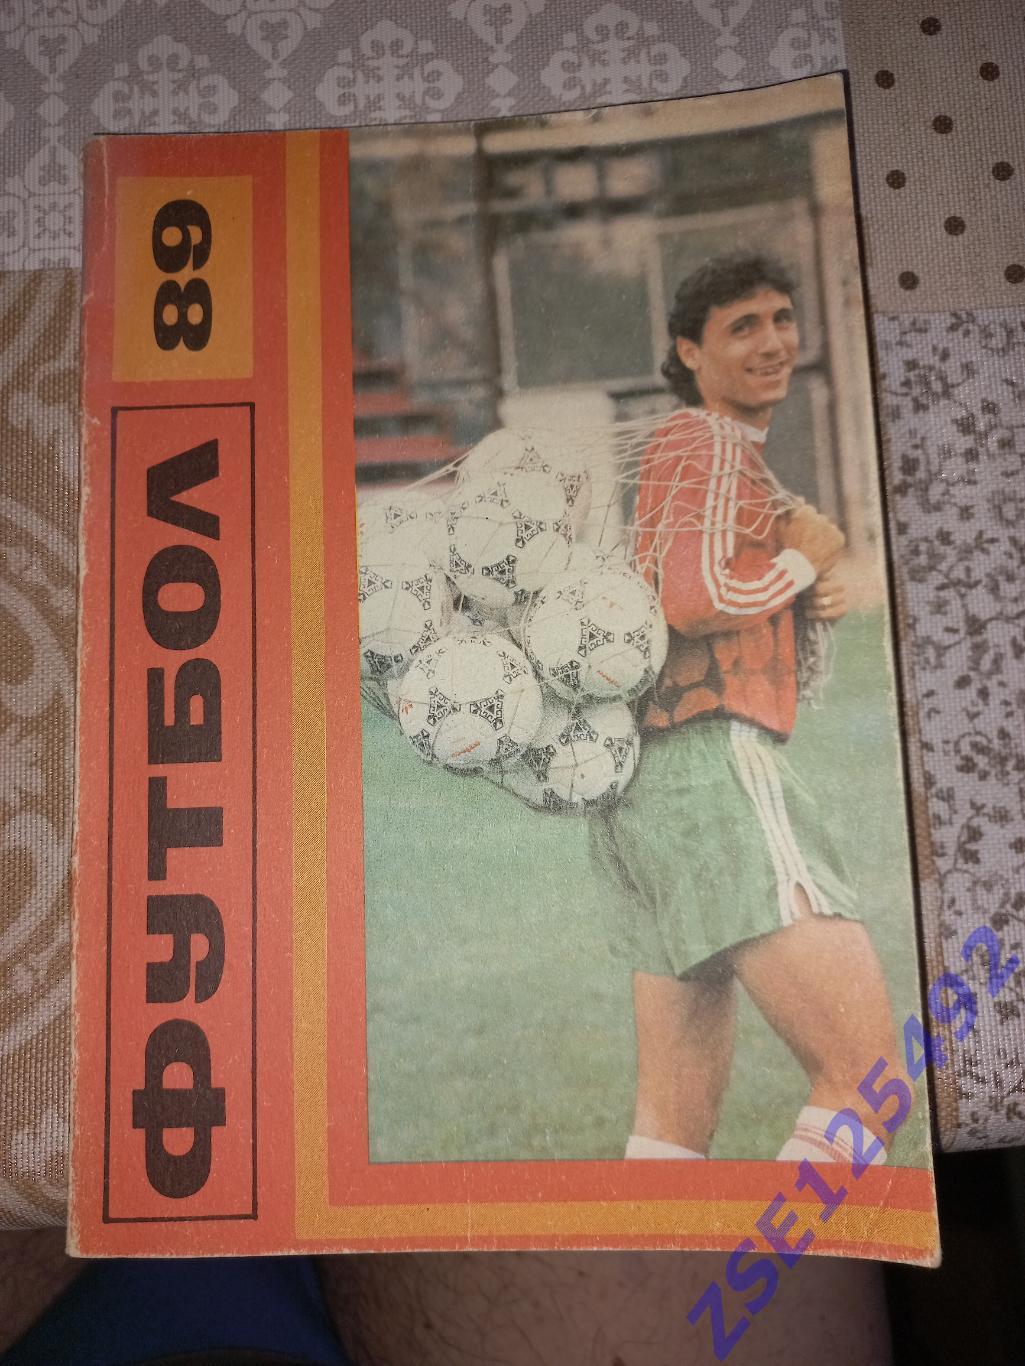 Календарь-справочник Футбол'89 Болгарский Футбольный Союз